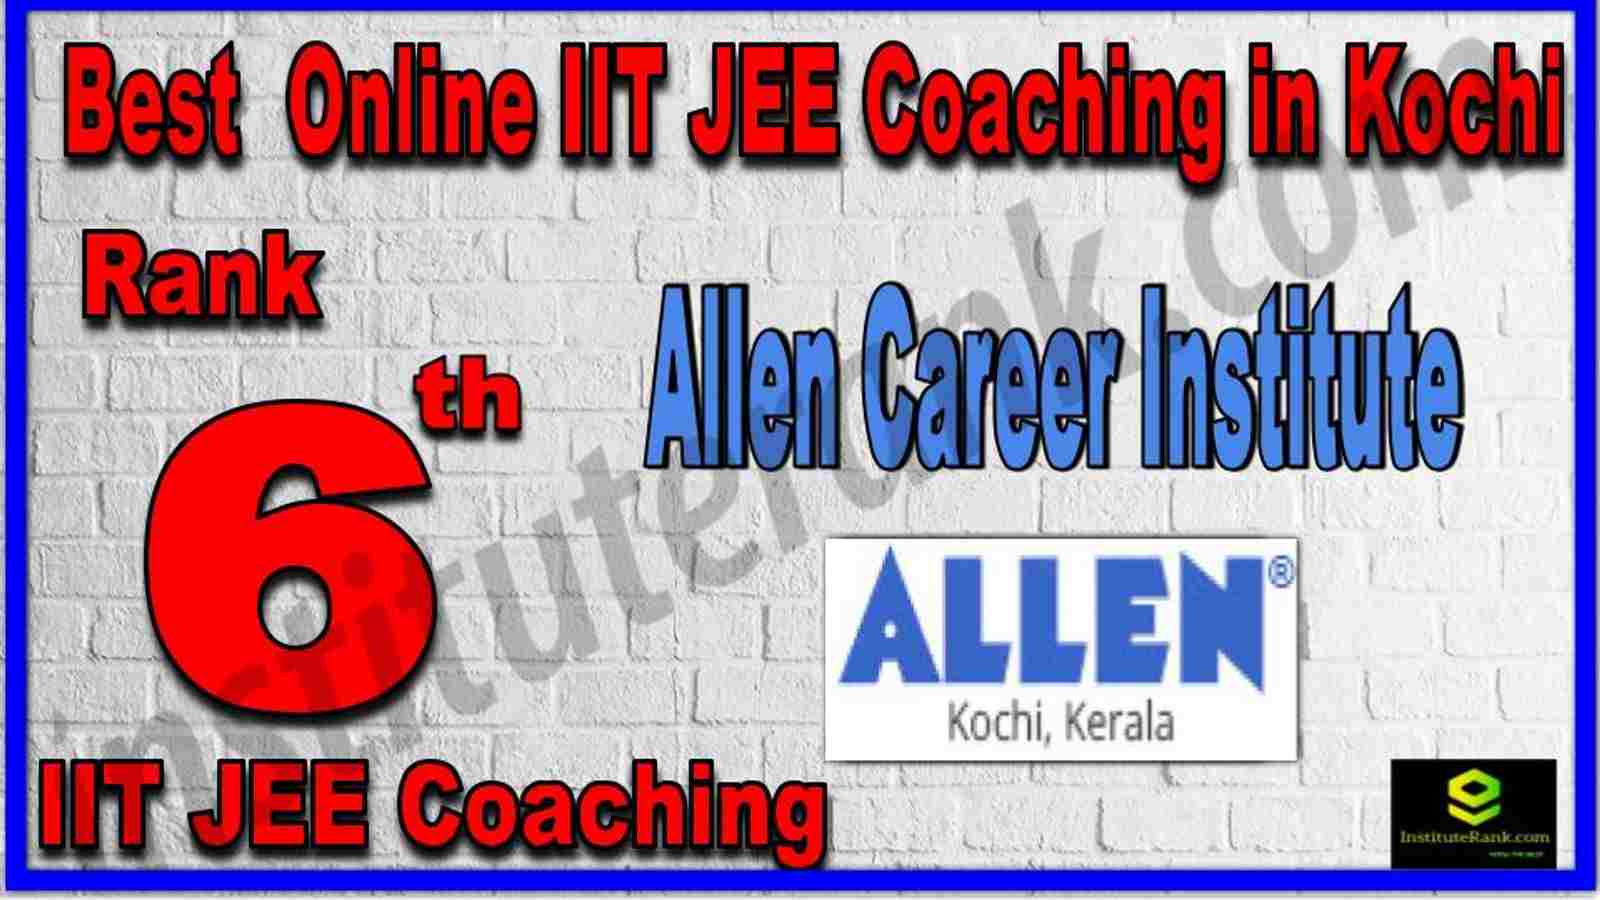 Rank 6th Best Online IIT JEE Coaching in Kochi